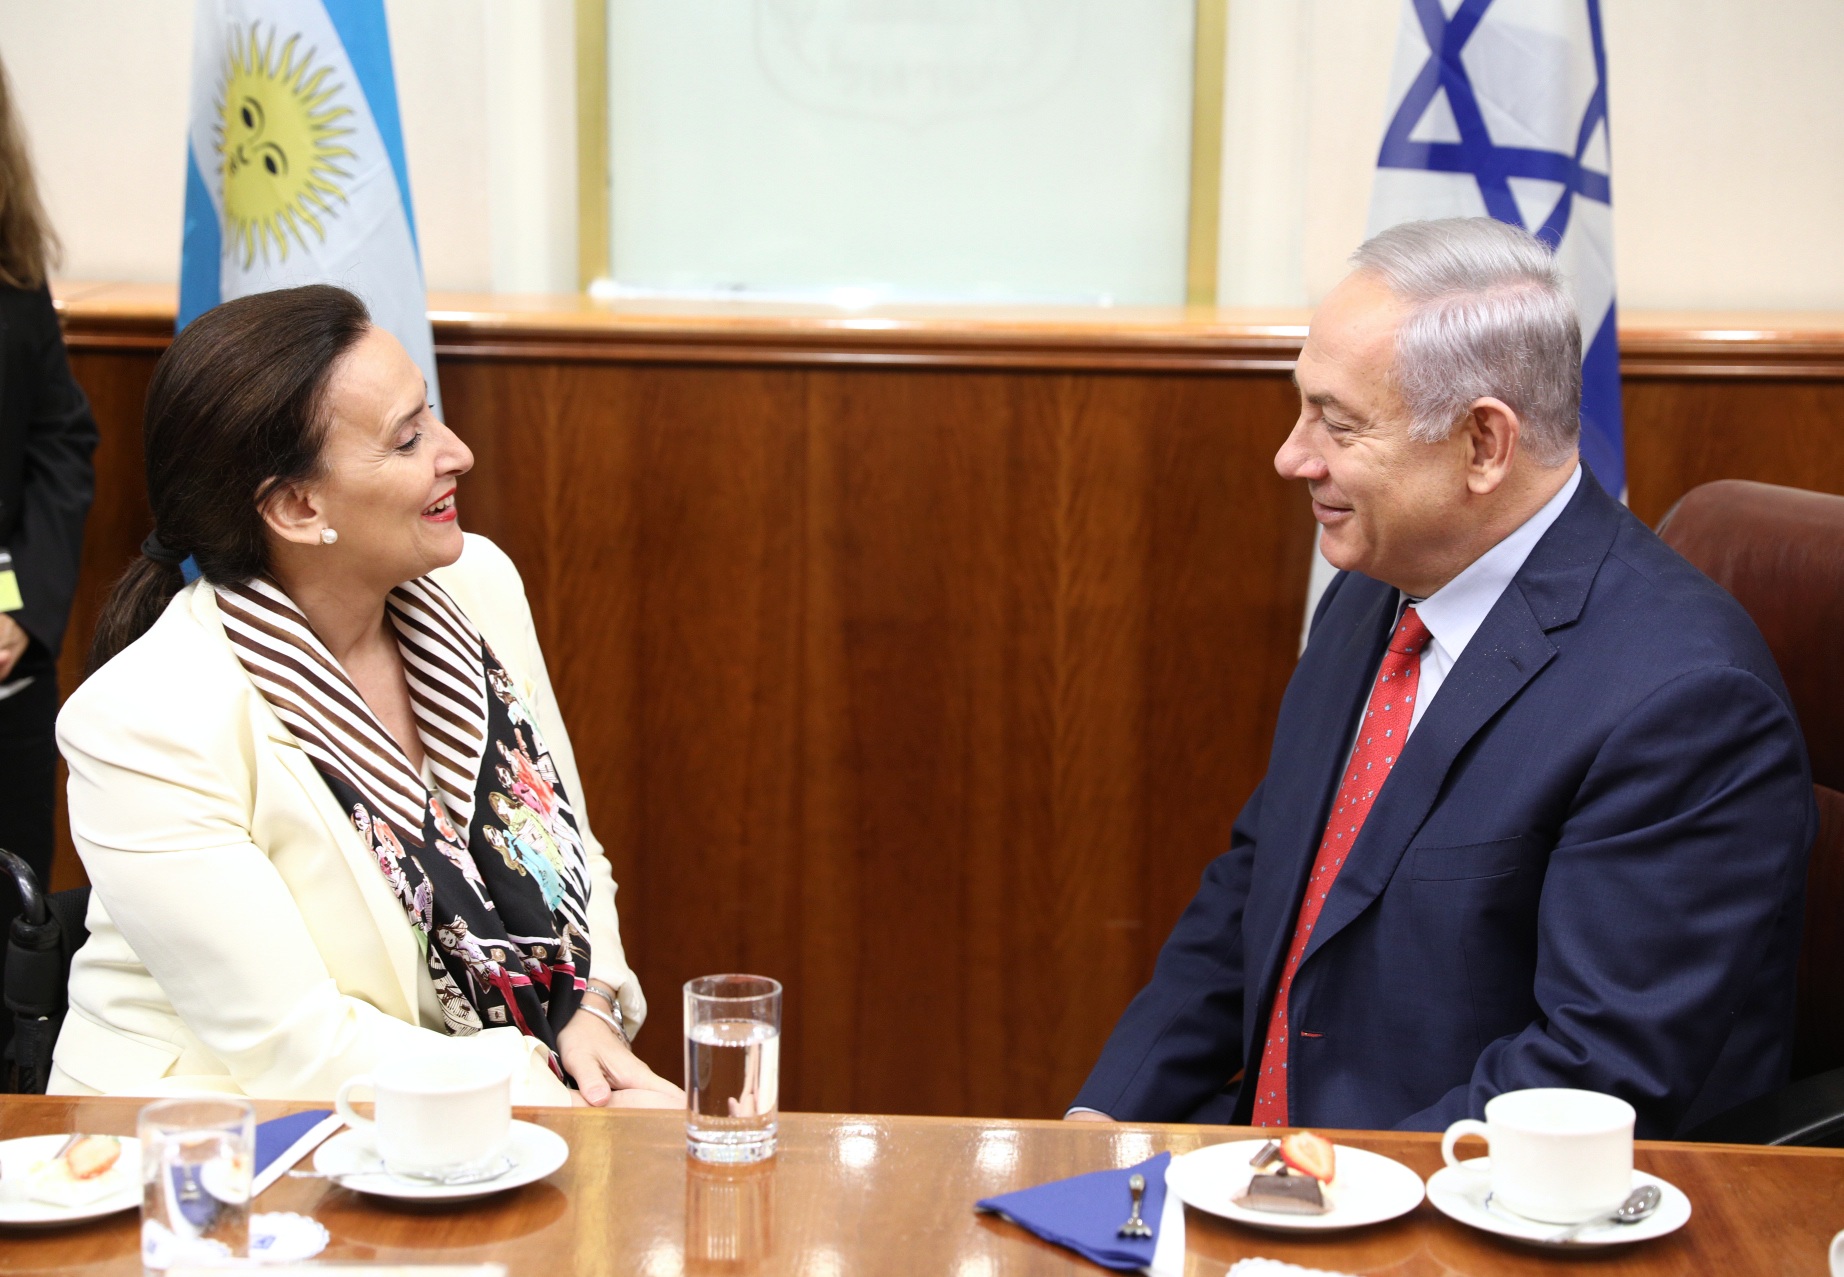 Michetti se reunió con Netanyahu